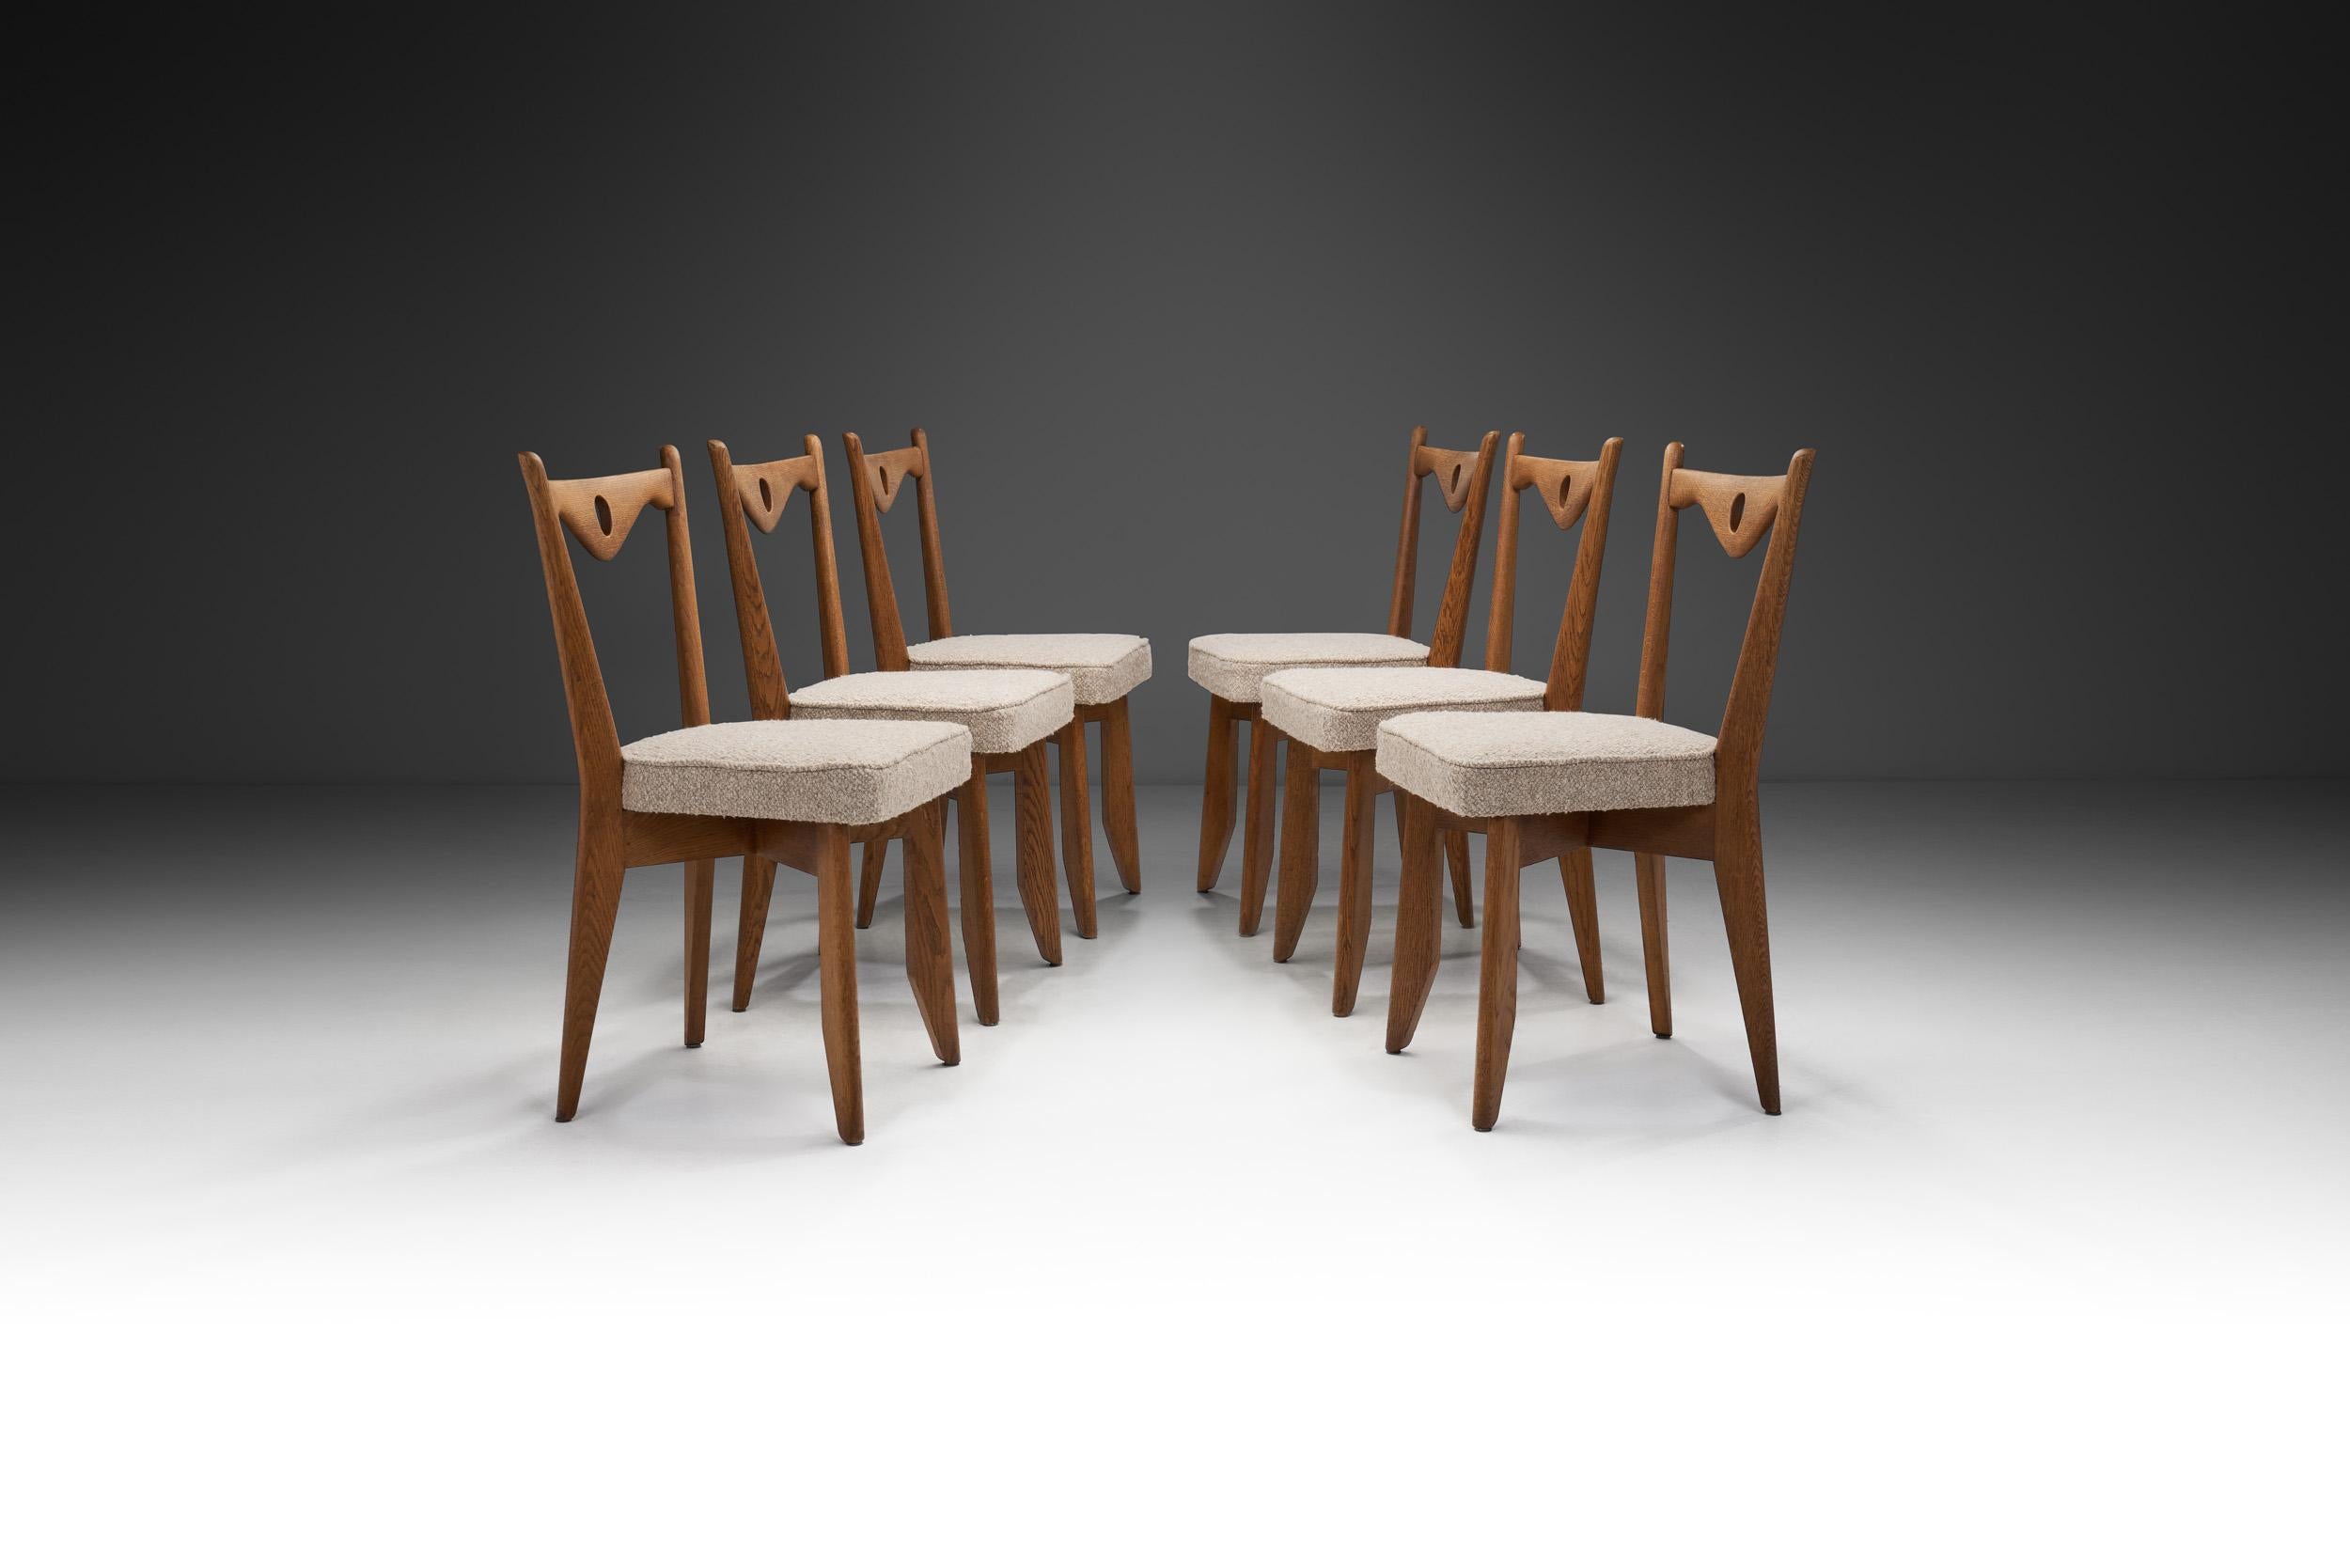 Ce rare ensemble de six chaises des designers français Guillerme et Chambron présente une apparence élégante combinée à des éléments de design distinctifs, notamment les barres triangulaires incurvées avec un trou dans chacune d'entre elles.

Les